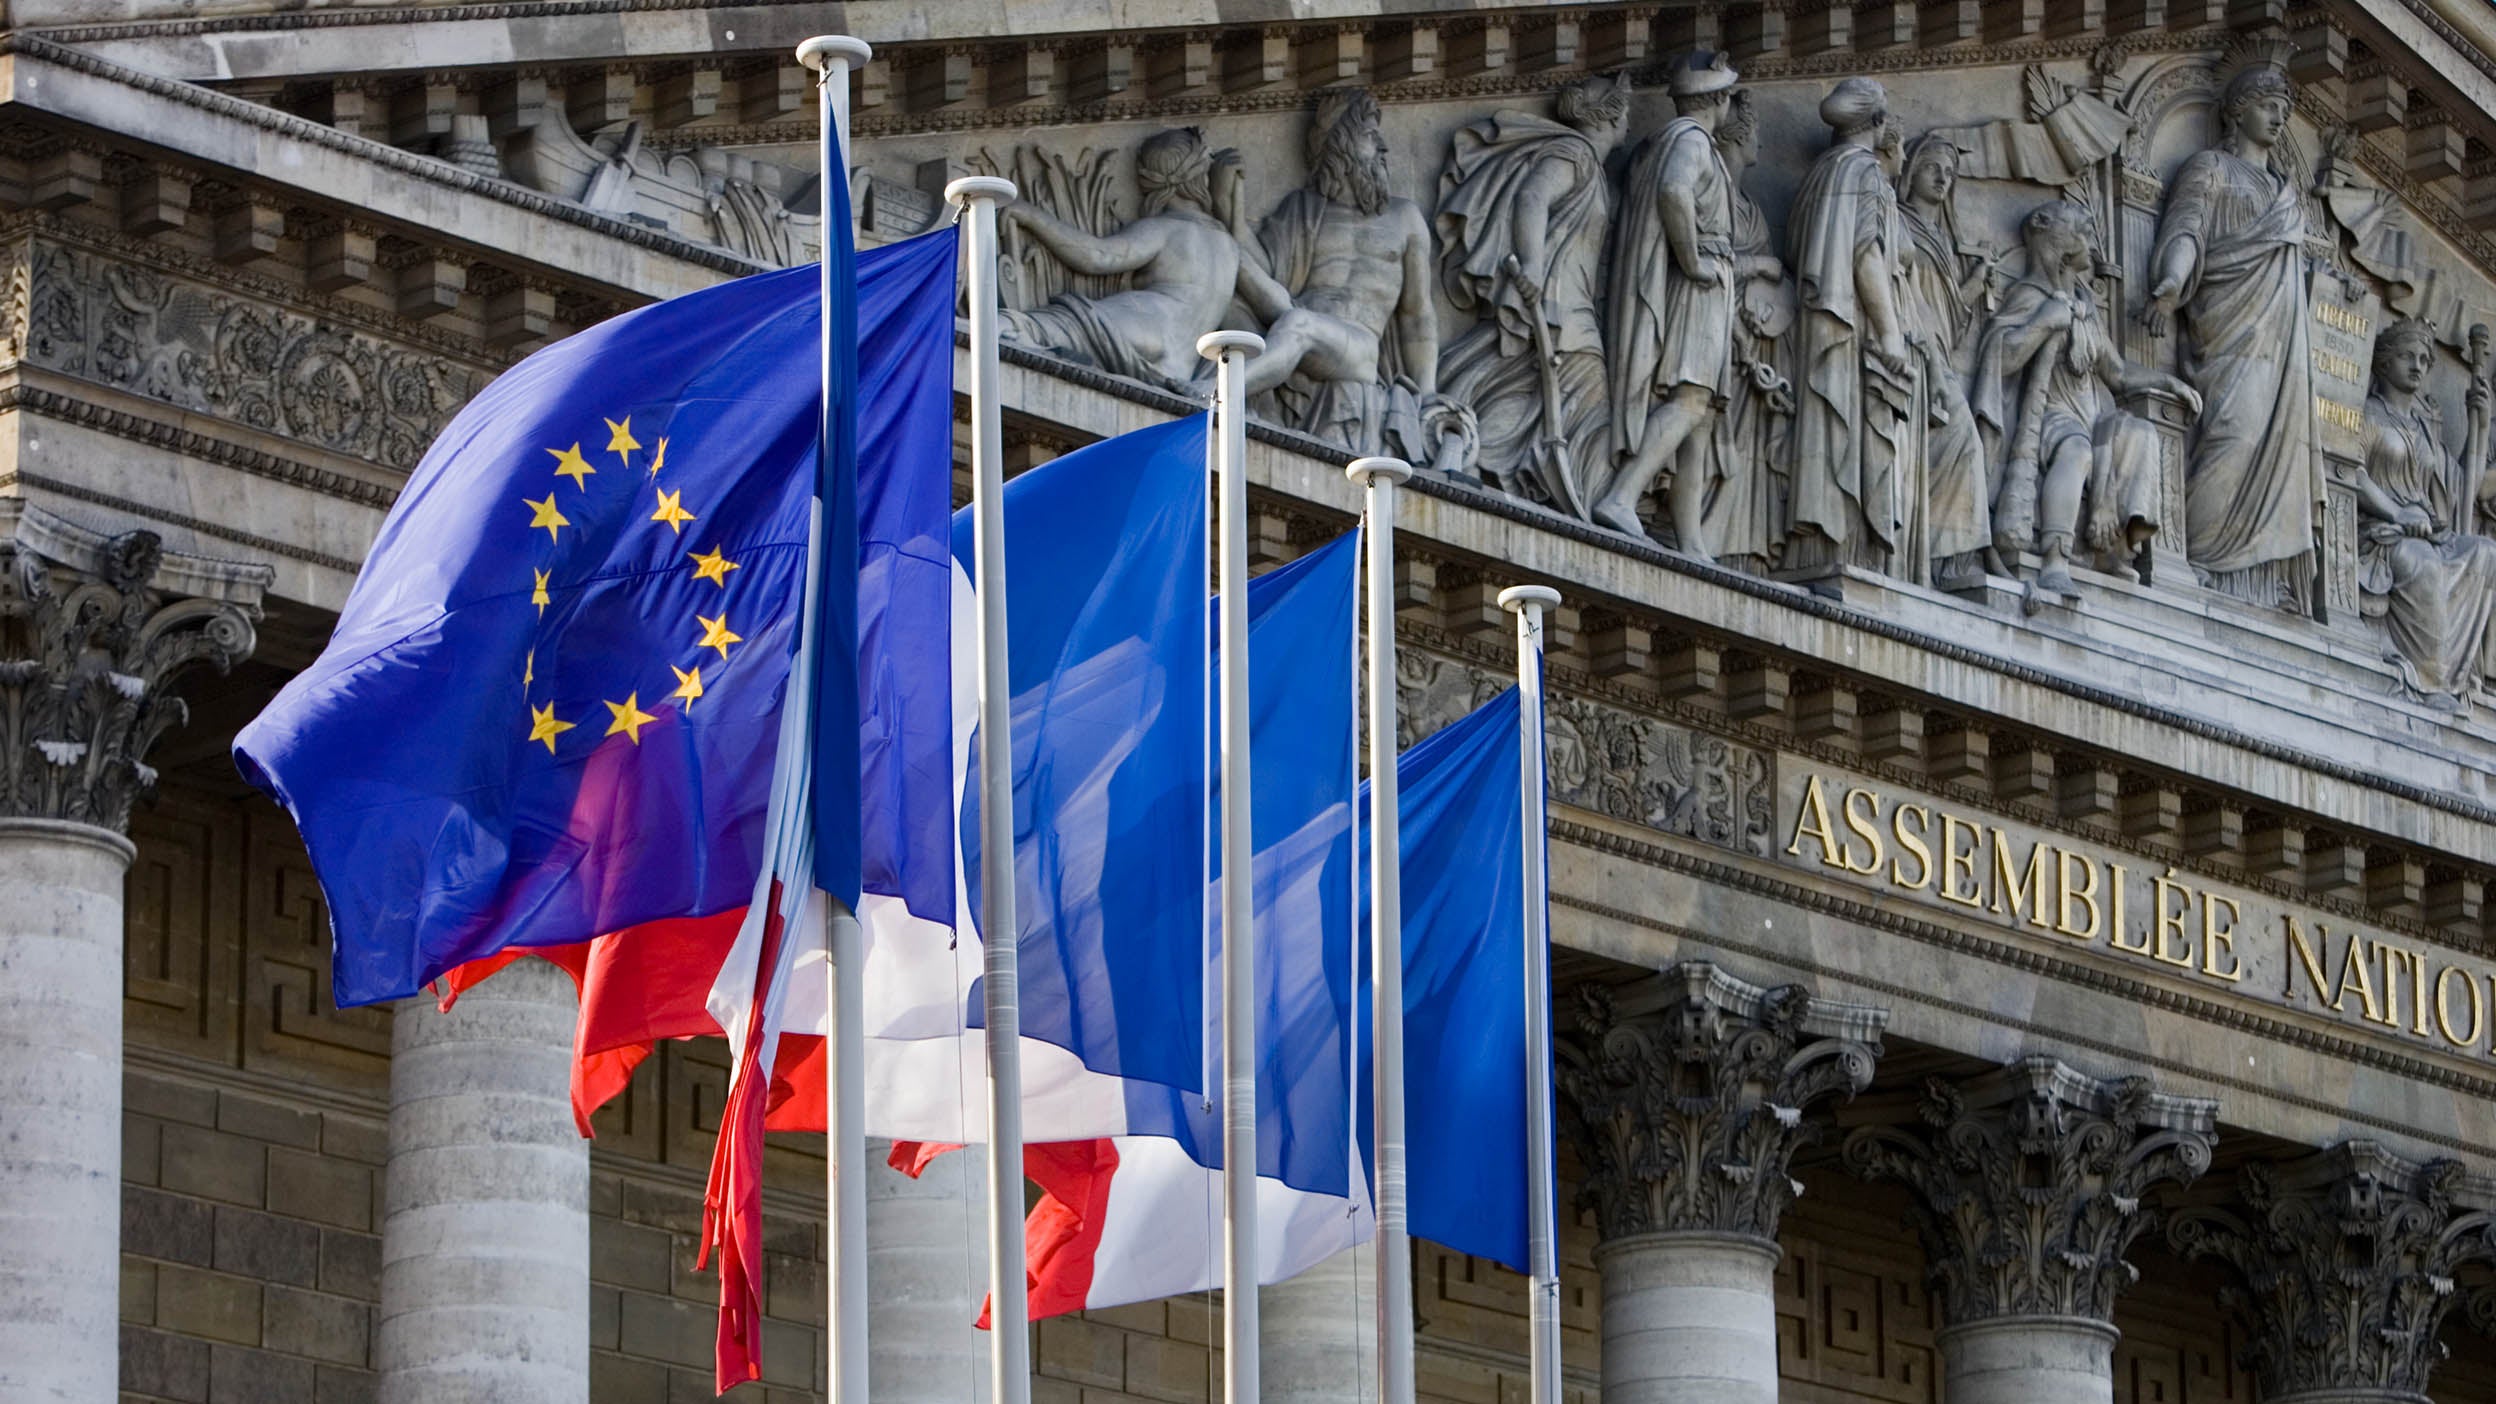 Des drapeaux flottent sur des mâts à l’extérieur d’Assemblée nationale, palais Bourbon, Centrale Paris, France